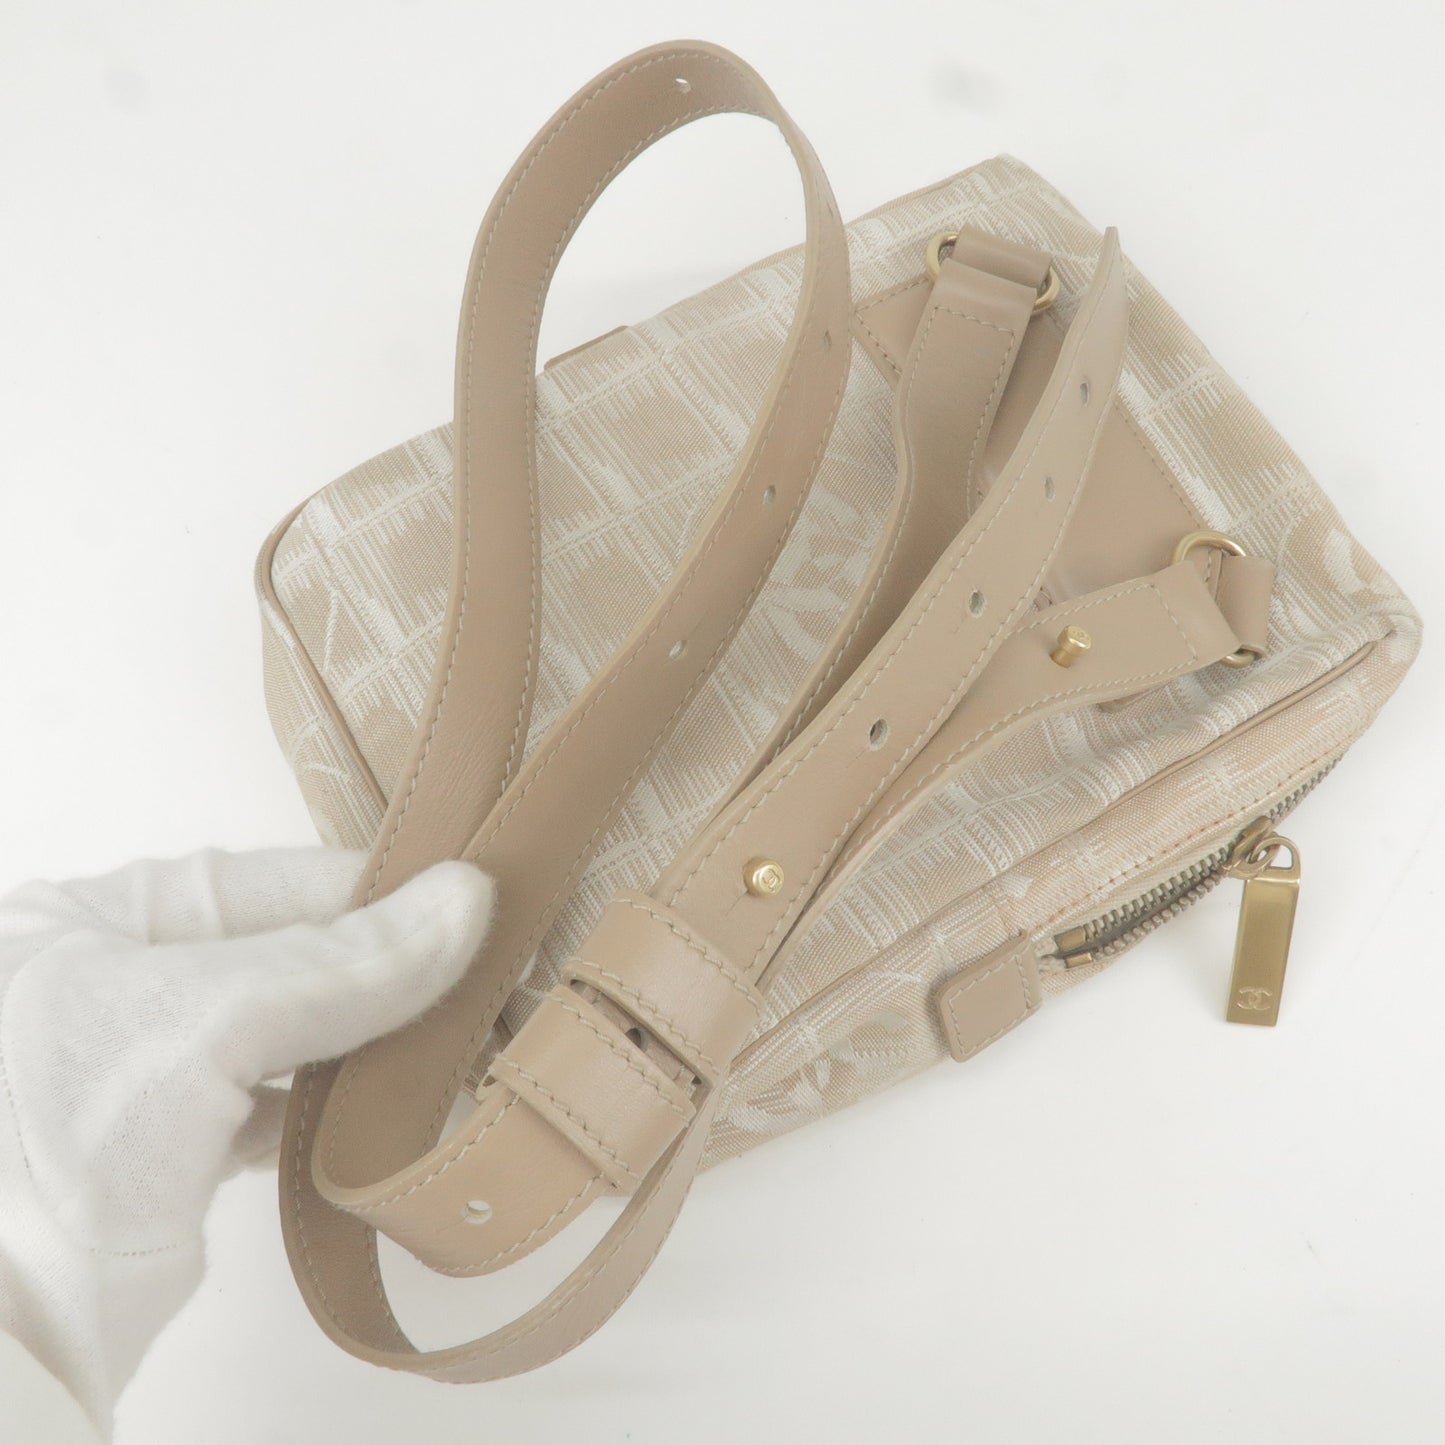 CHANEL Travel Line Nylon Jacquard Leather Shoulder Bag A20513